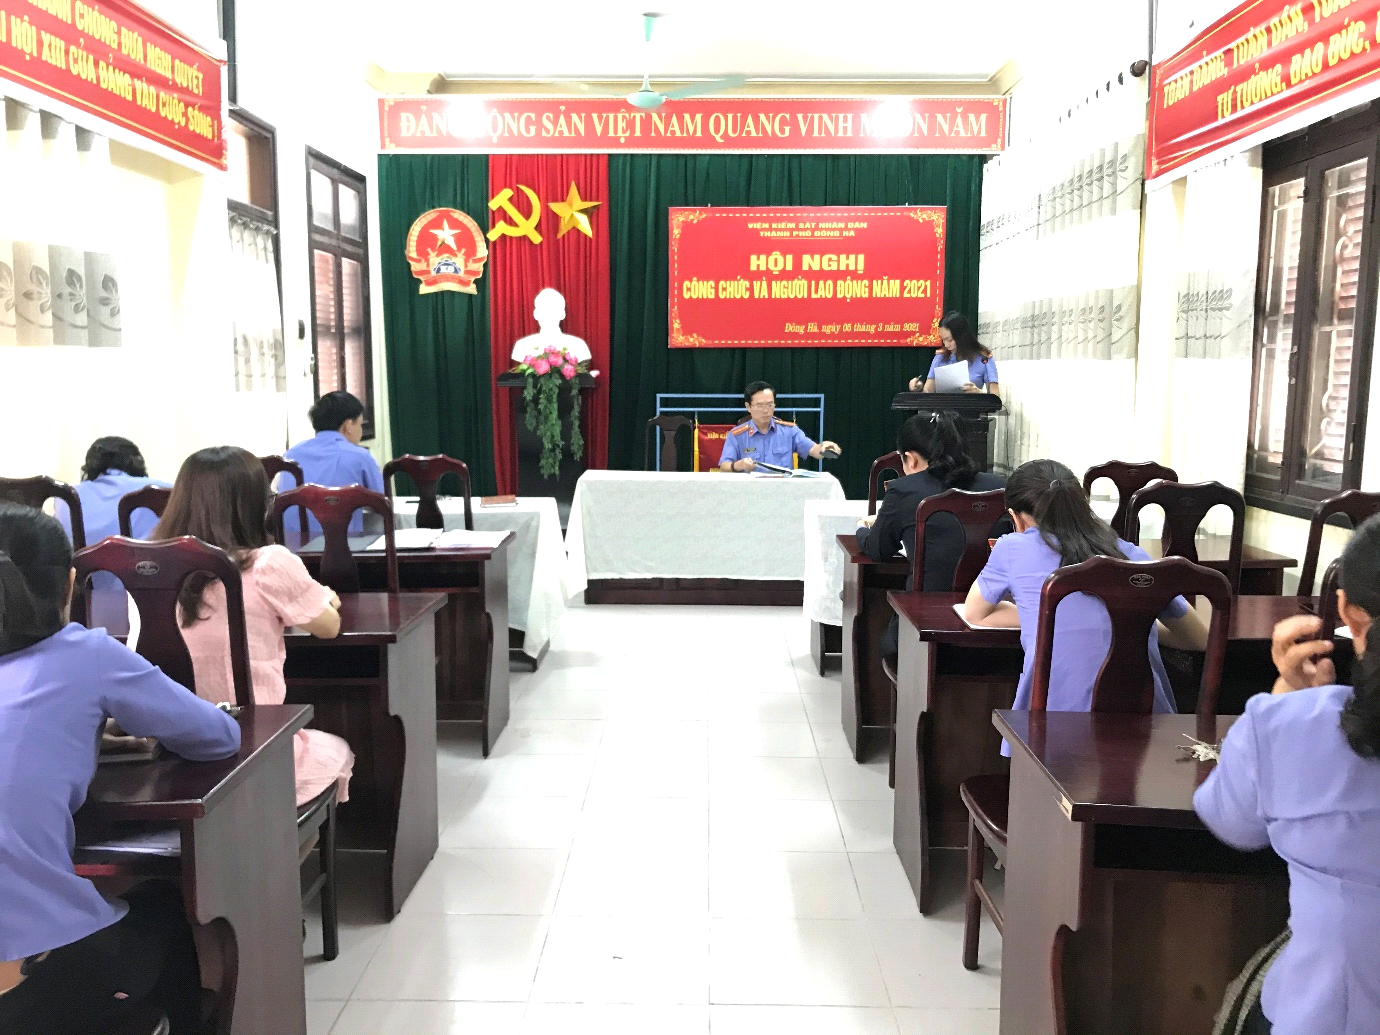 Hình ảnh hoạt động Viện kiểm sát tỉnh Quảng Trị